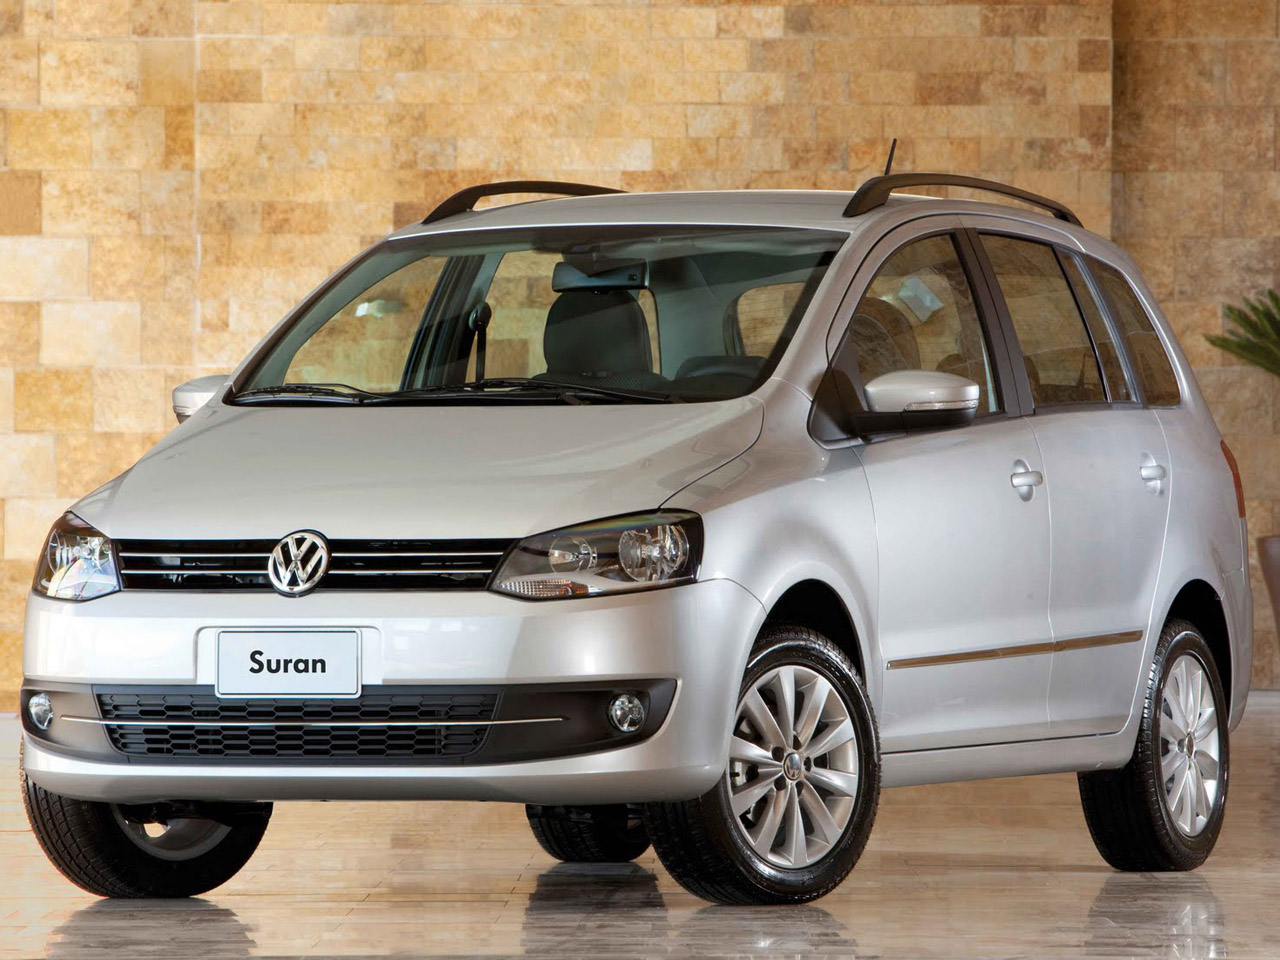 2010 Volkswagen Suran